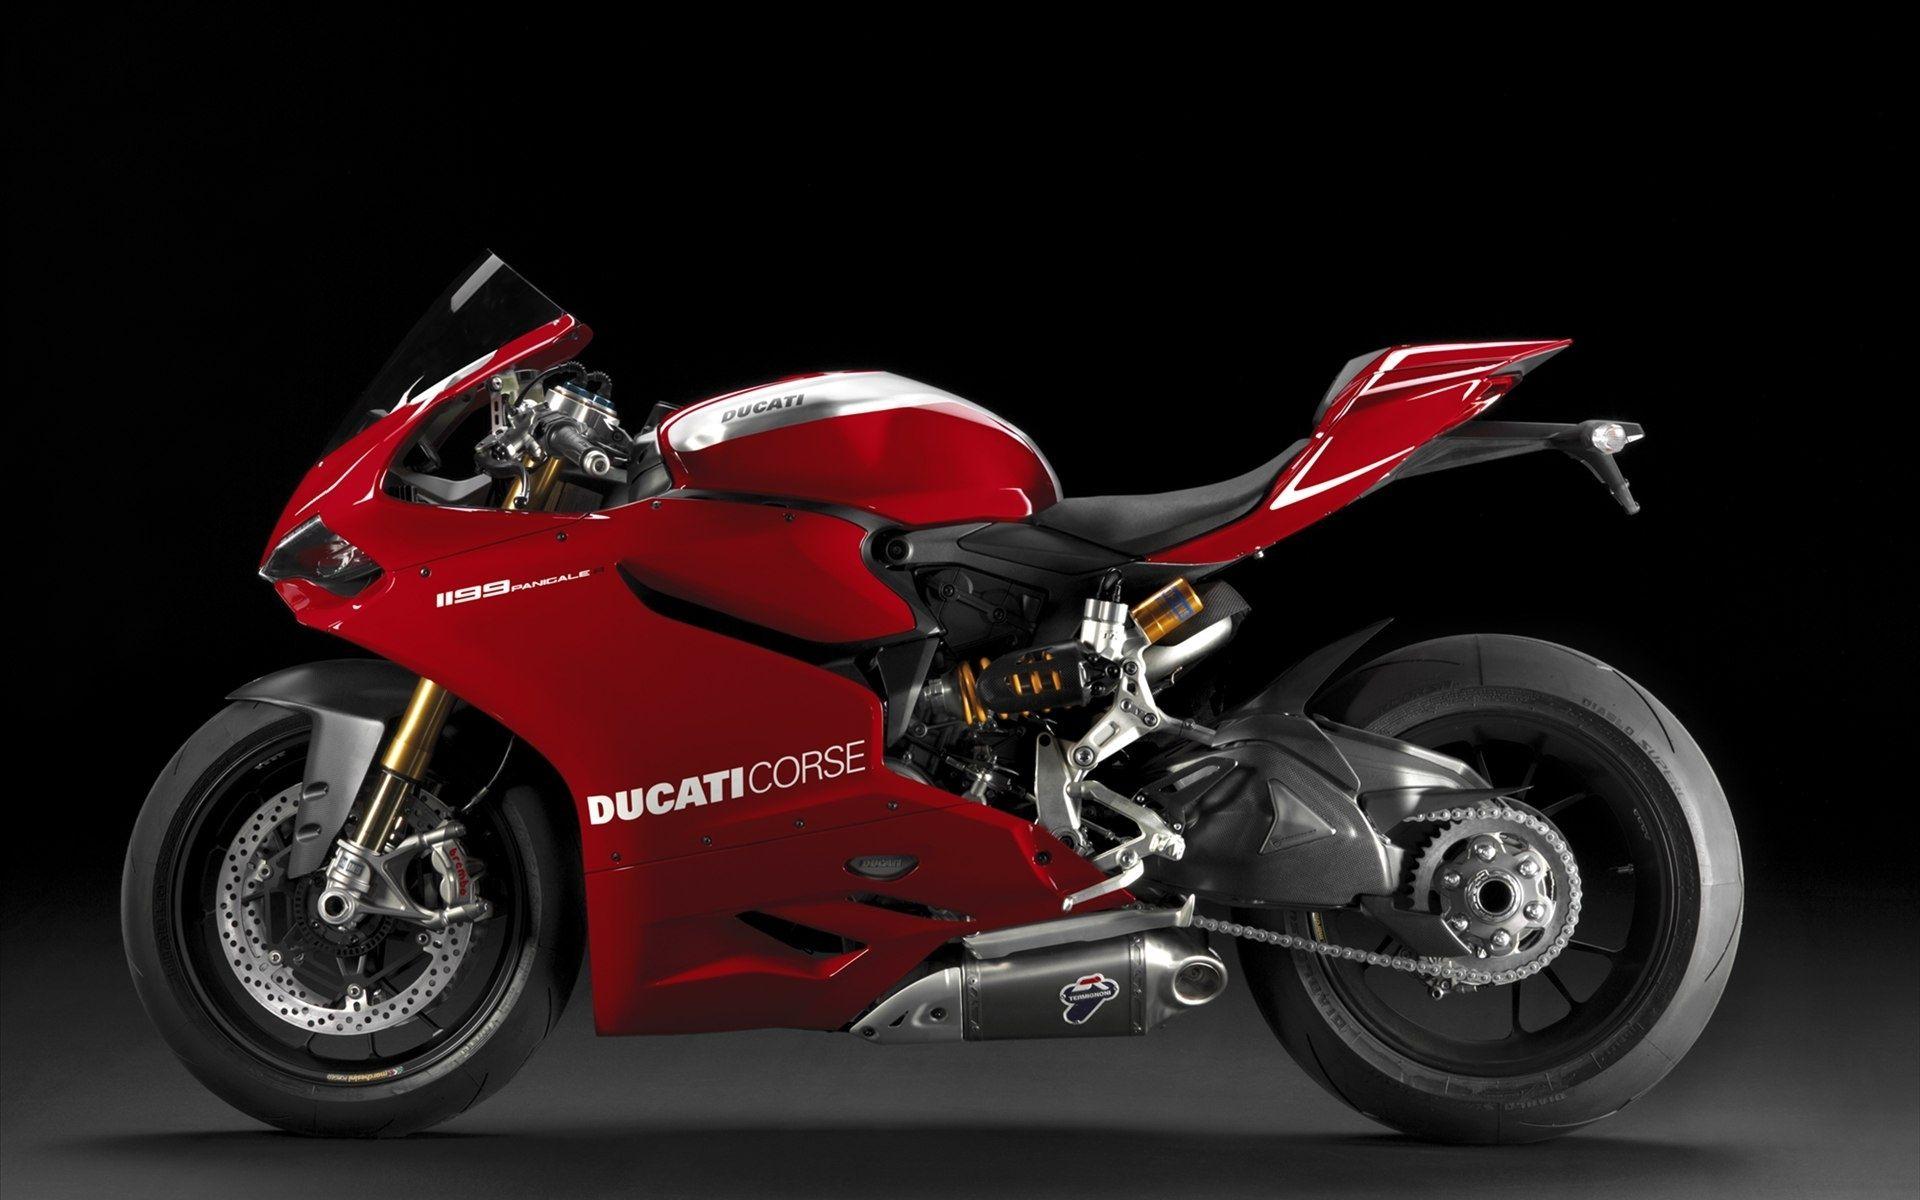 Ducati Superbike Wallpaper For iPhone